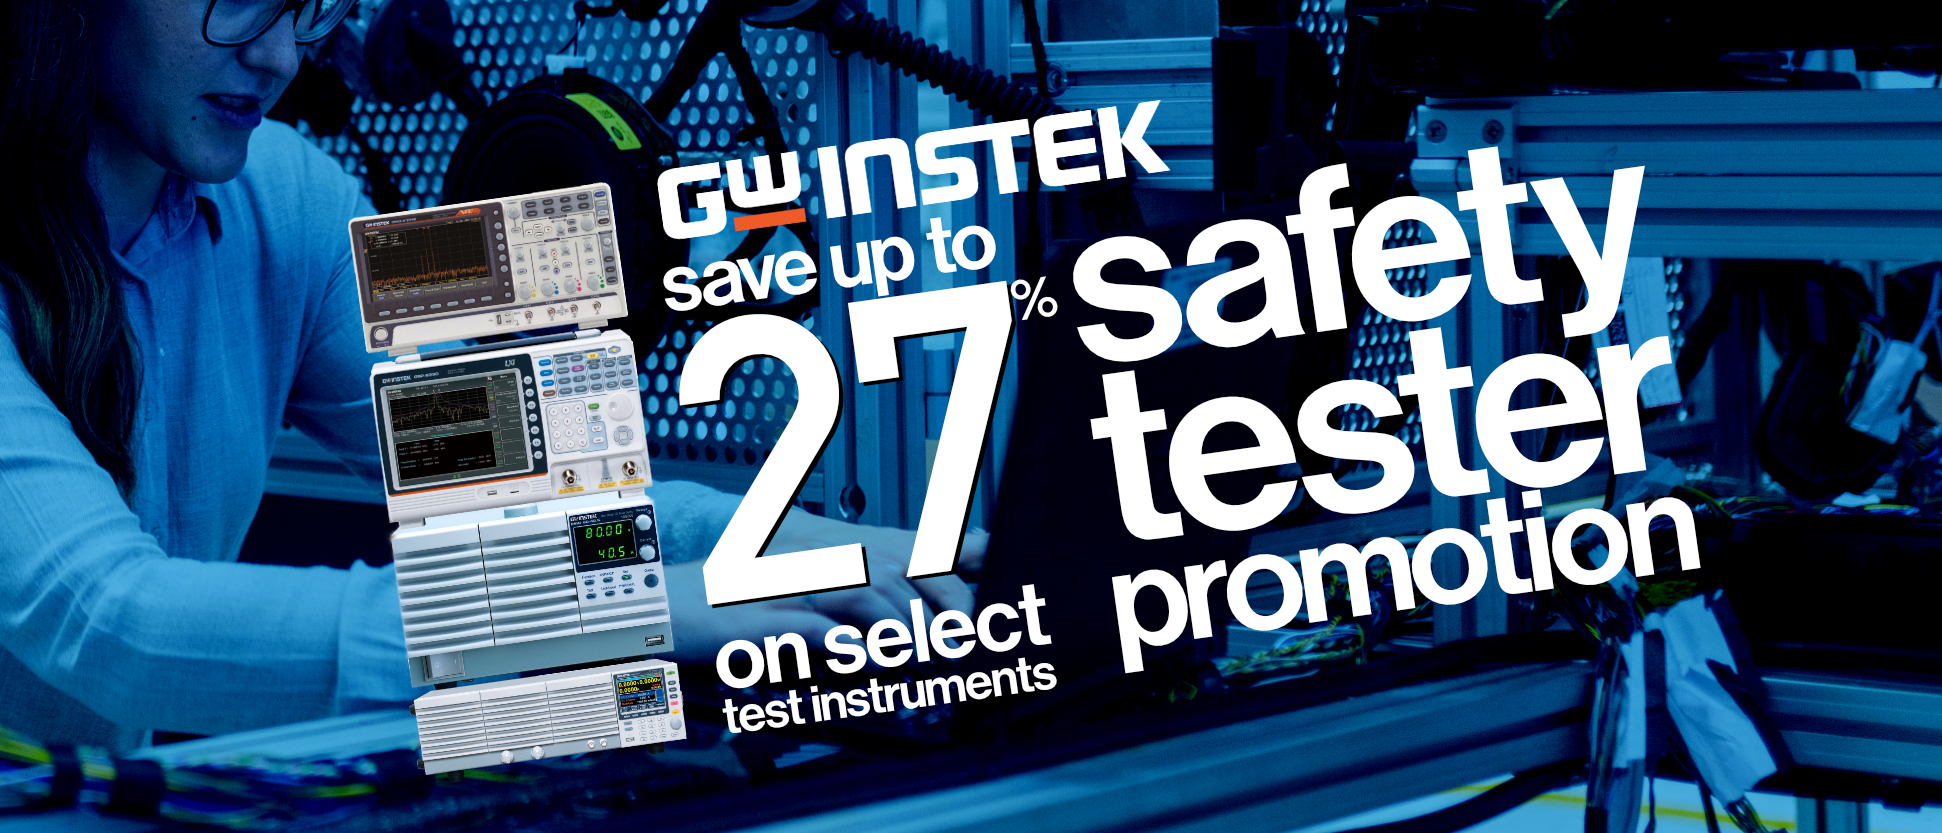 GW Instek's Safety Tester Promotion